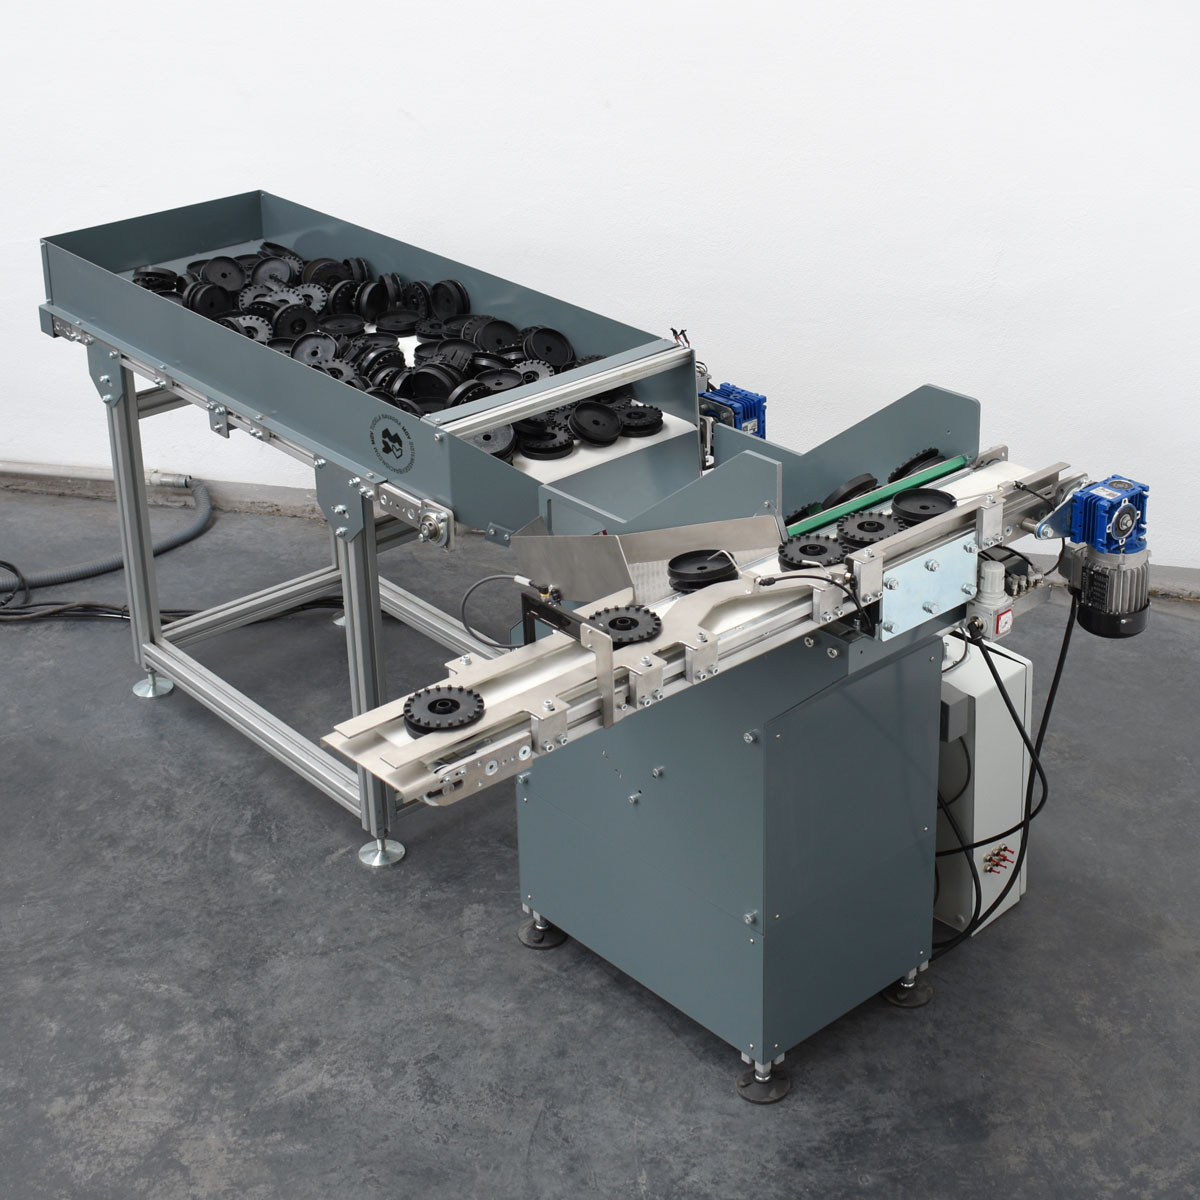 Unidadesde alimentación mecánica para el posicionamiento automatizado de piezas vista trasera superior